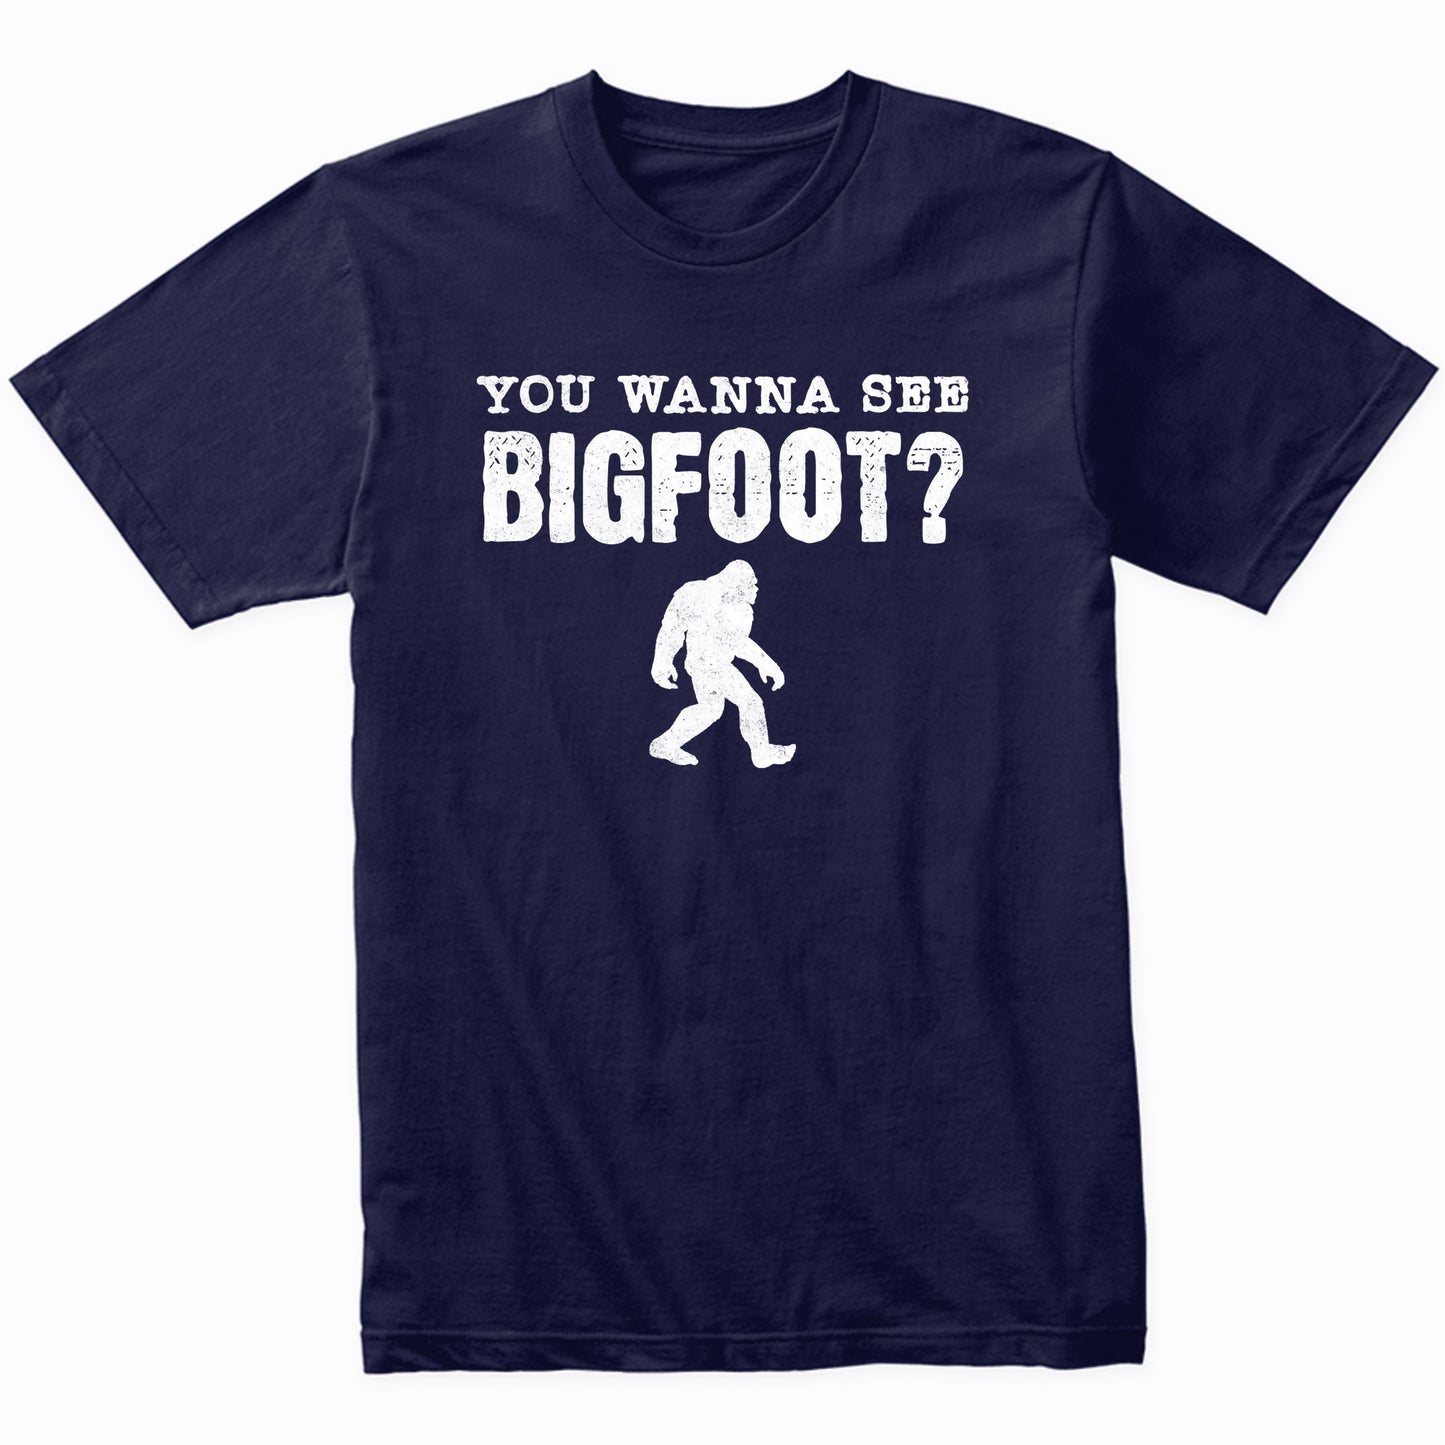 You Wanna See Bigfoot? Funny Flip Shirt Sasquatch T-Shirt - Bigfoot Shirt - Funny Gift for Men